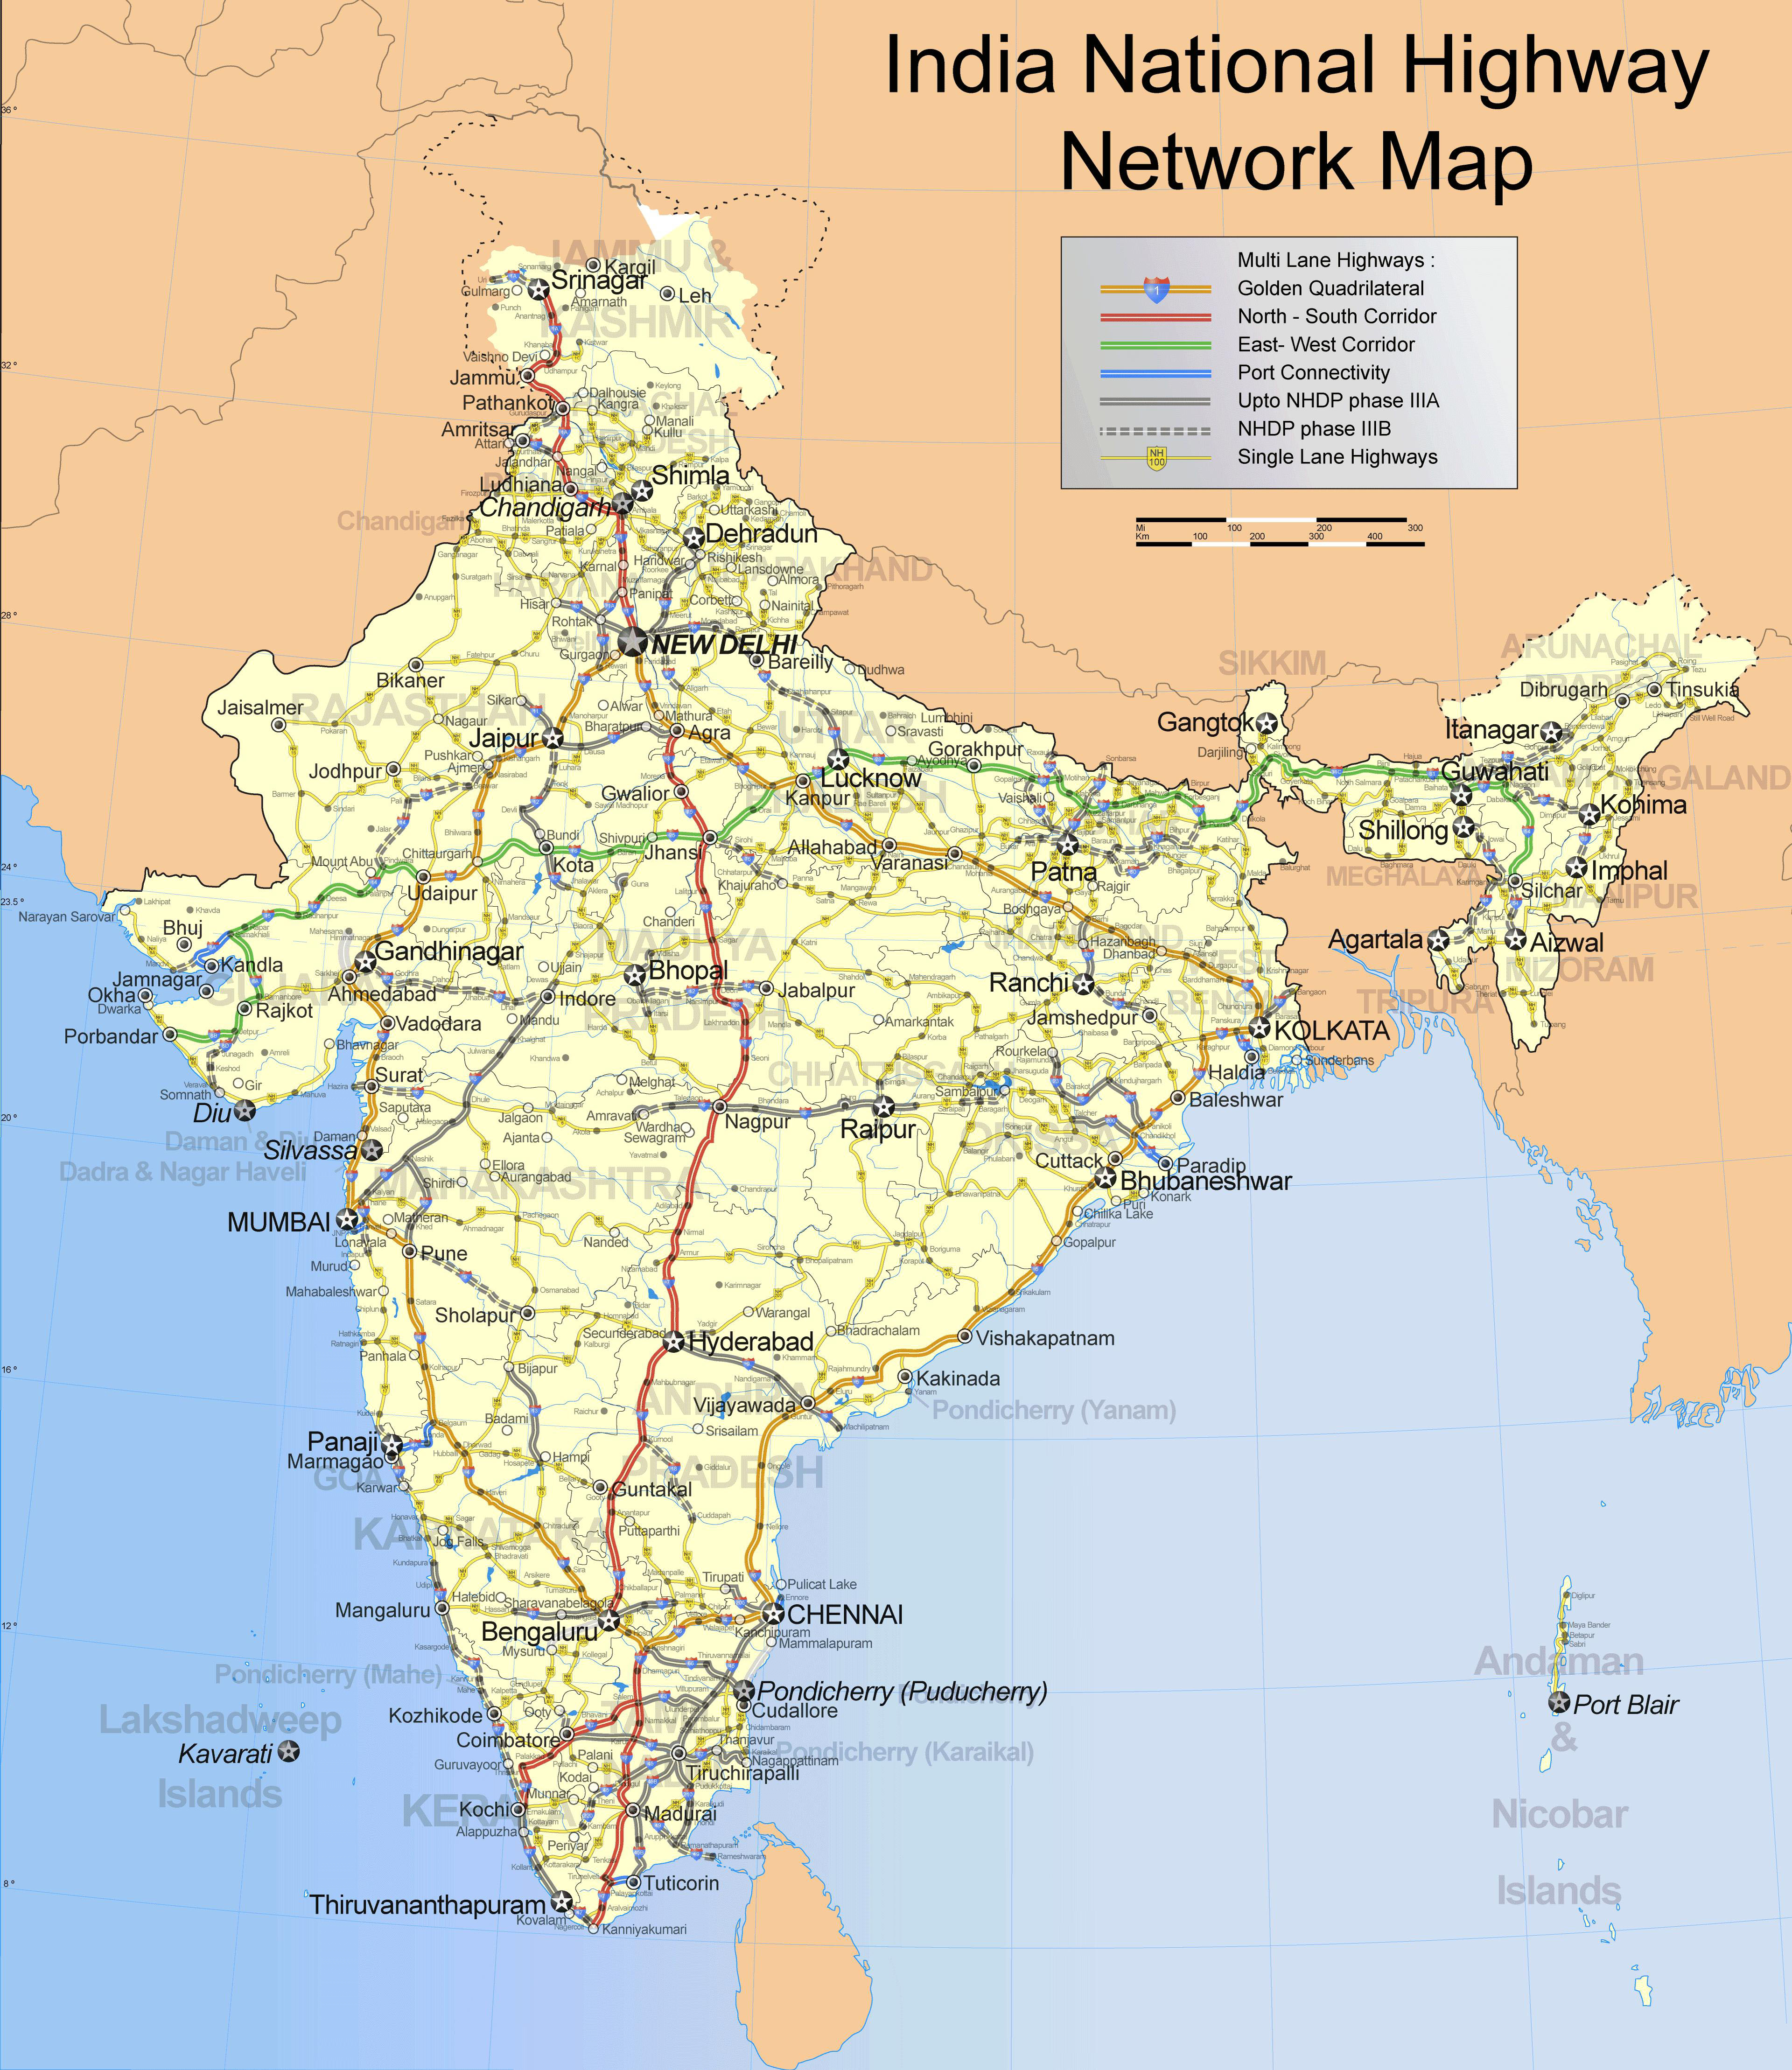 Bản đồ ấn độ khổ lớn: Nâng cao hiểu biết về địa lý Ấn Độ với bản đồ khổ lớn. Chỉ cần một lần nhìn, bạn sẽ được cập nhật đầy đủ về các vùng miền, địa danh, điểm tham quan, và cả những điểm đến ẩn hiện.